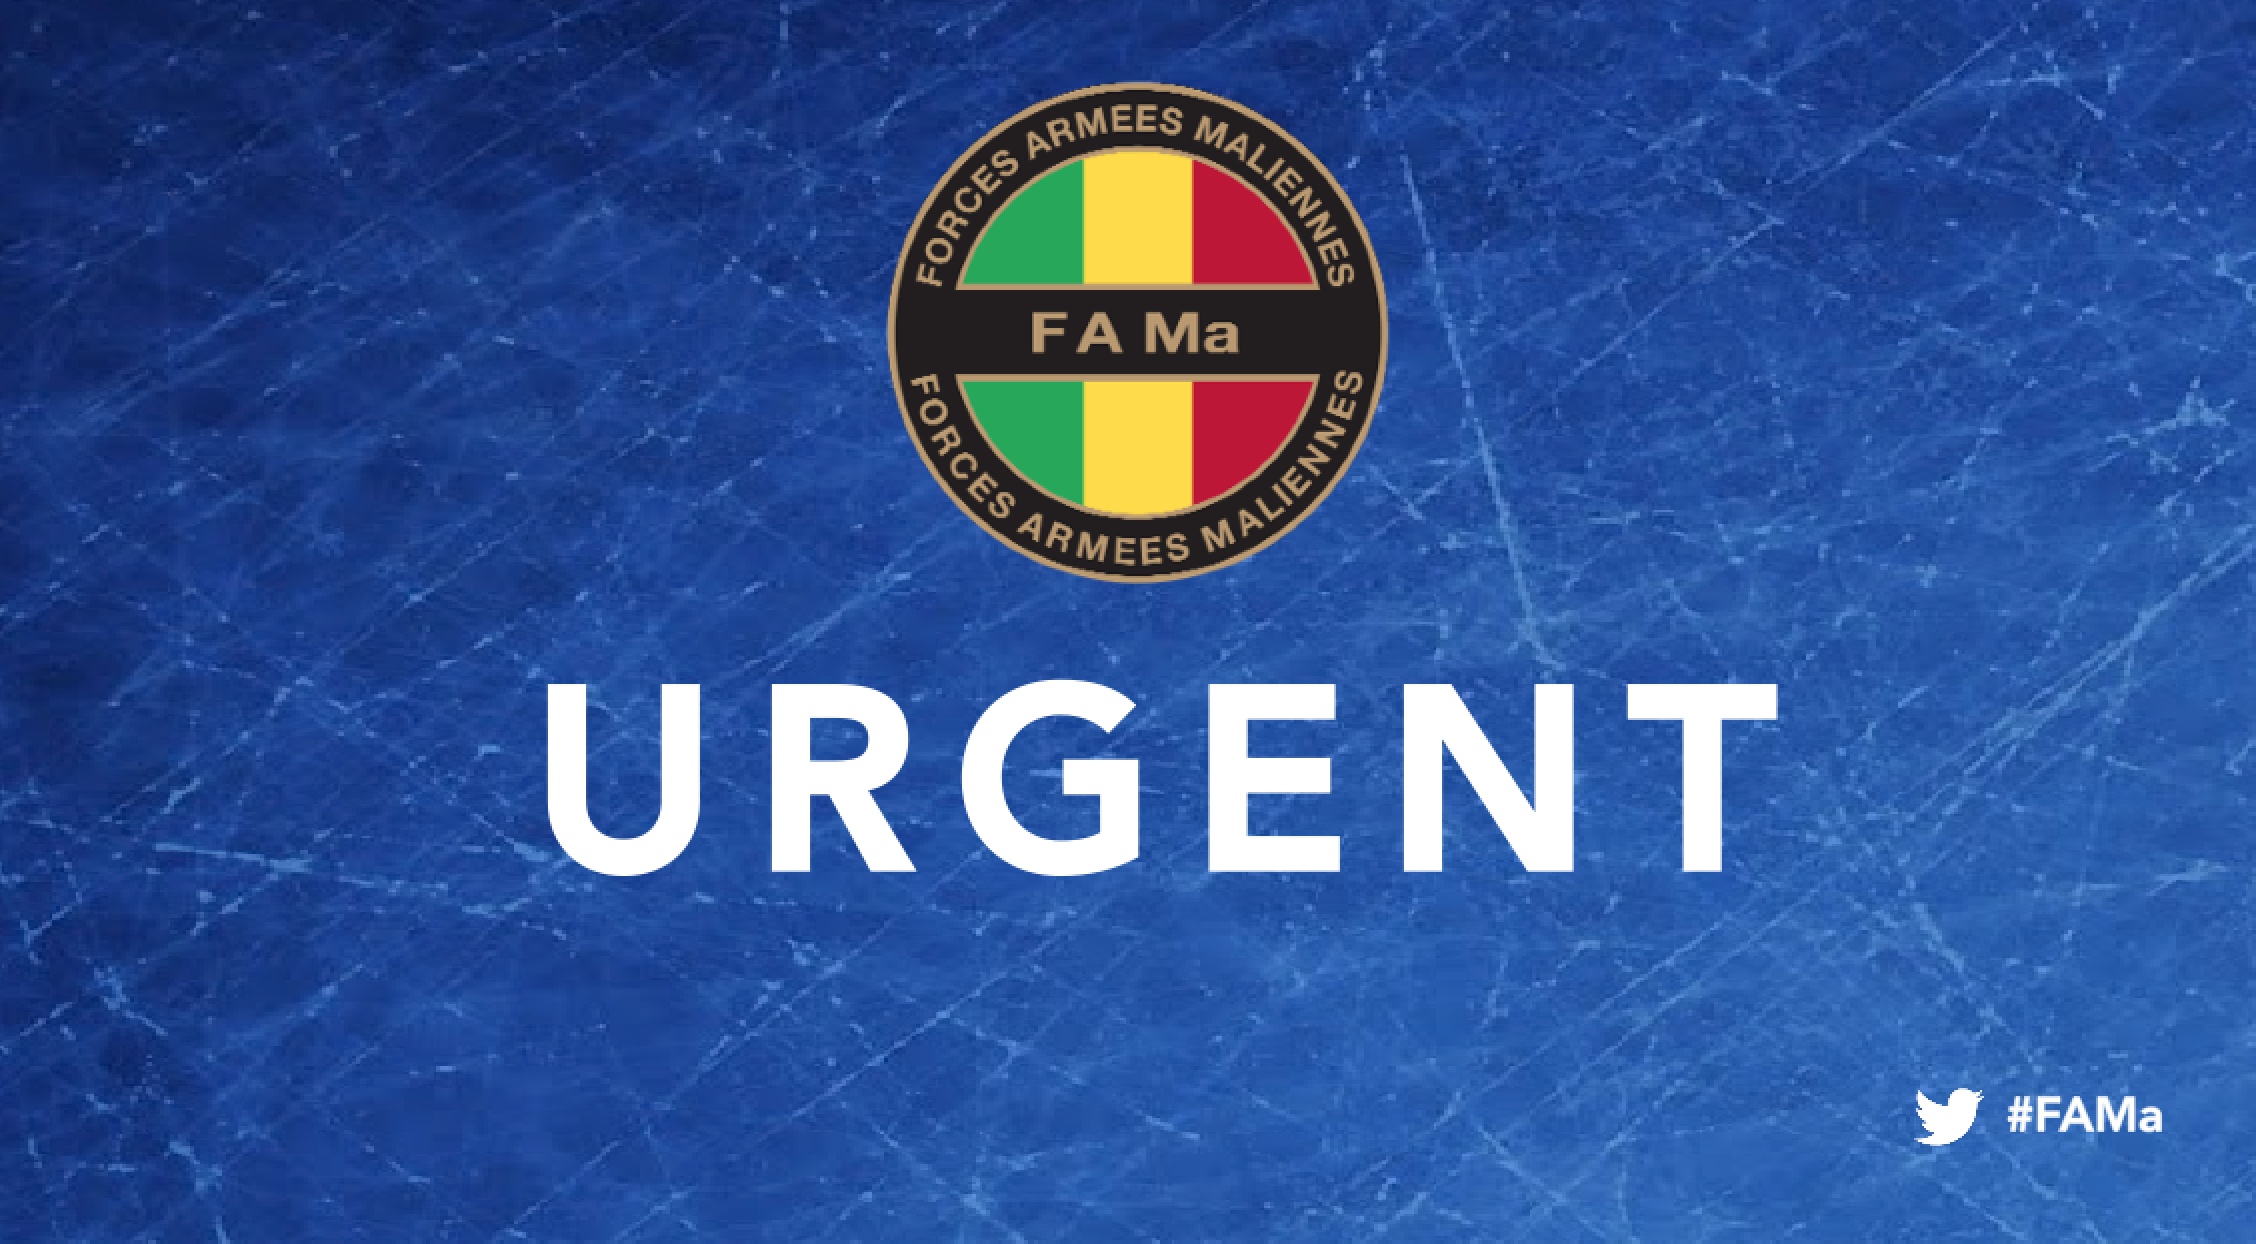 Urgent ‼️